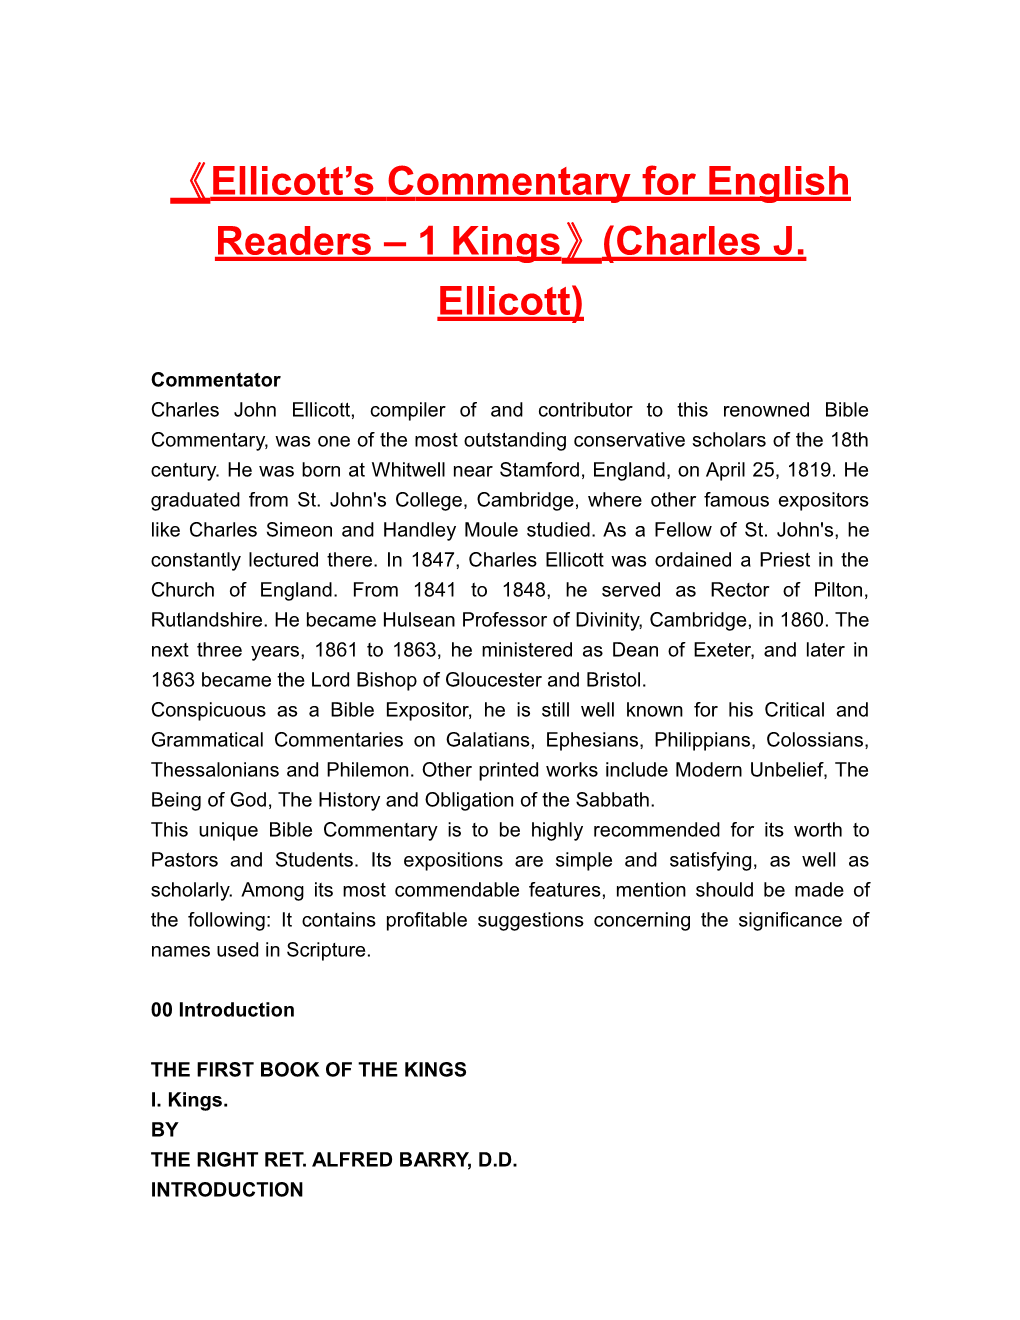 Ellicott Scommentary for English Readers 1 Kings (Charles J. Ellicott)